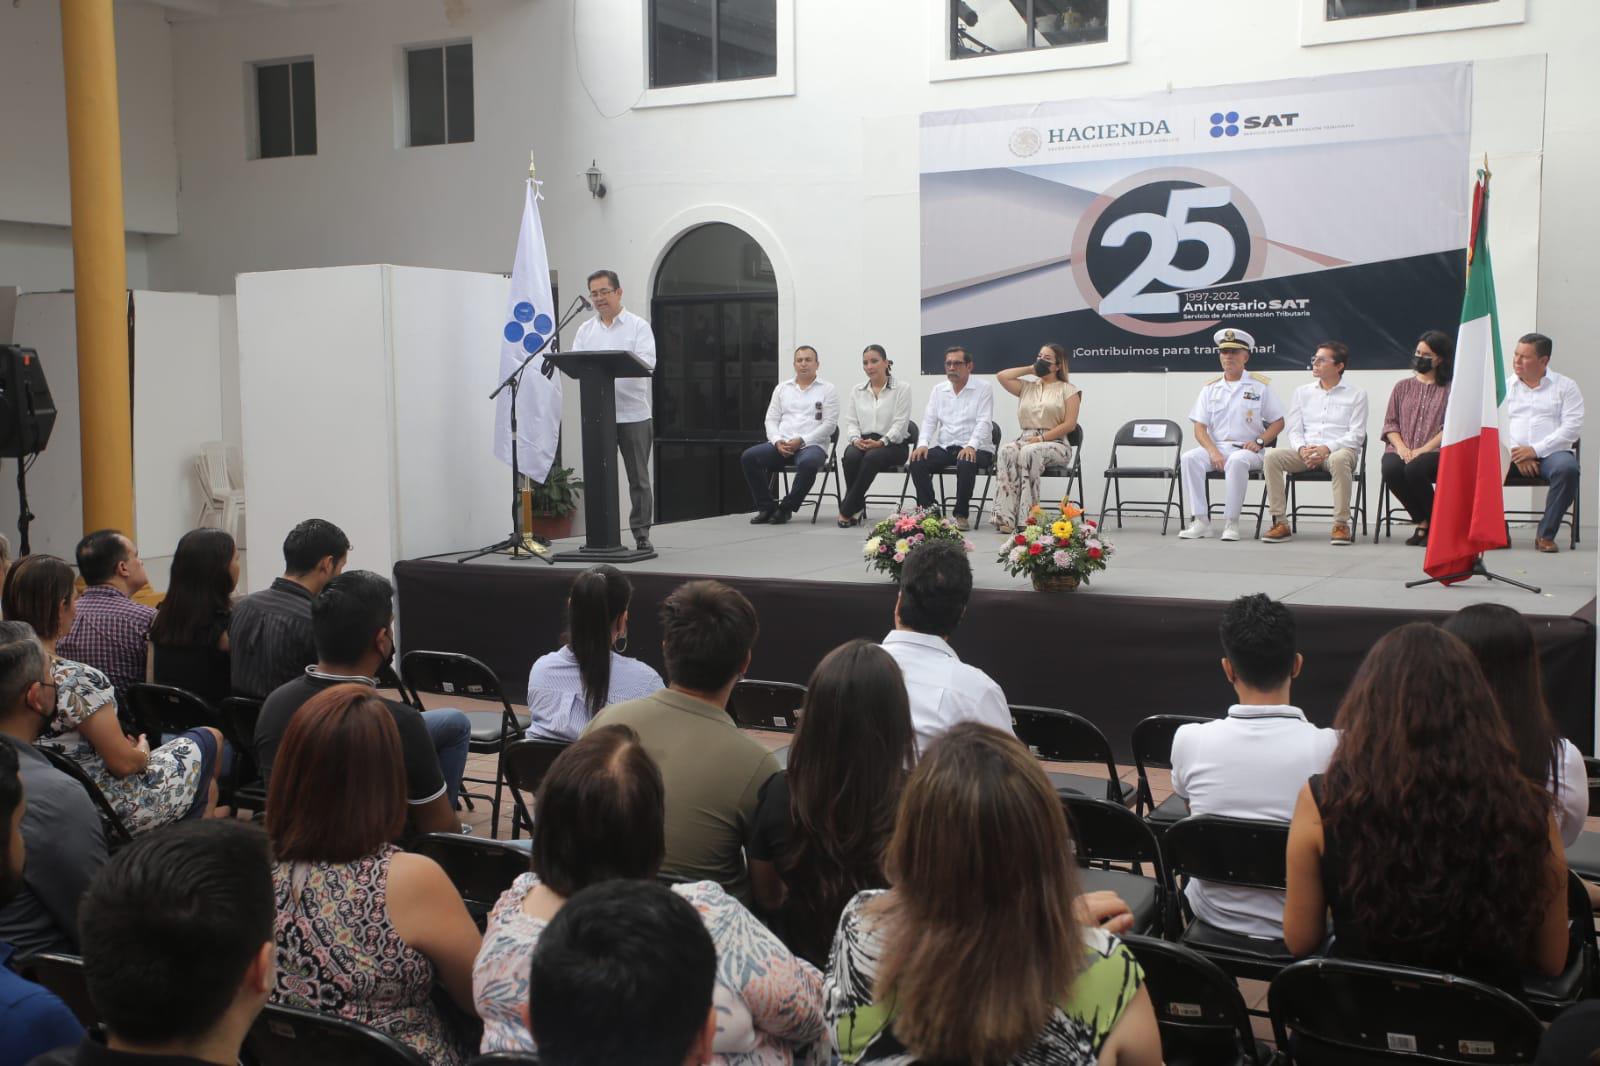 $!SAT celebra en Mazatlán 25 aniversario de creación con muestra fotográfica